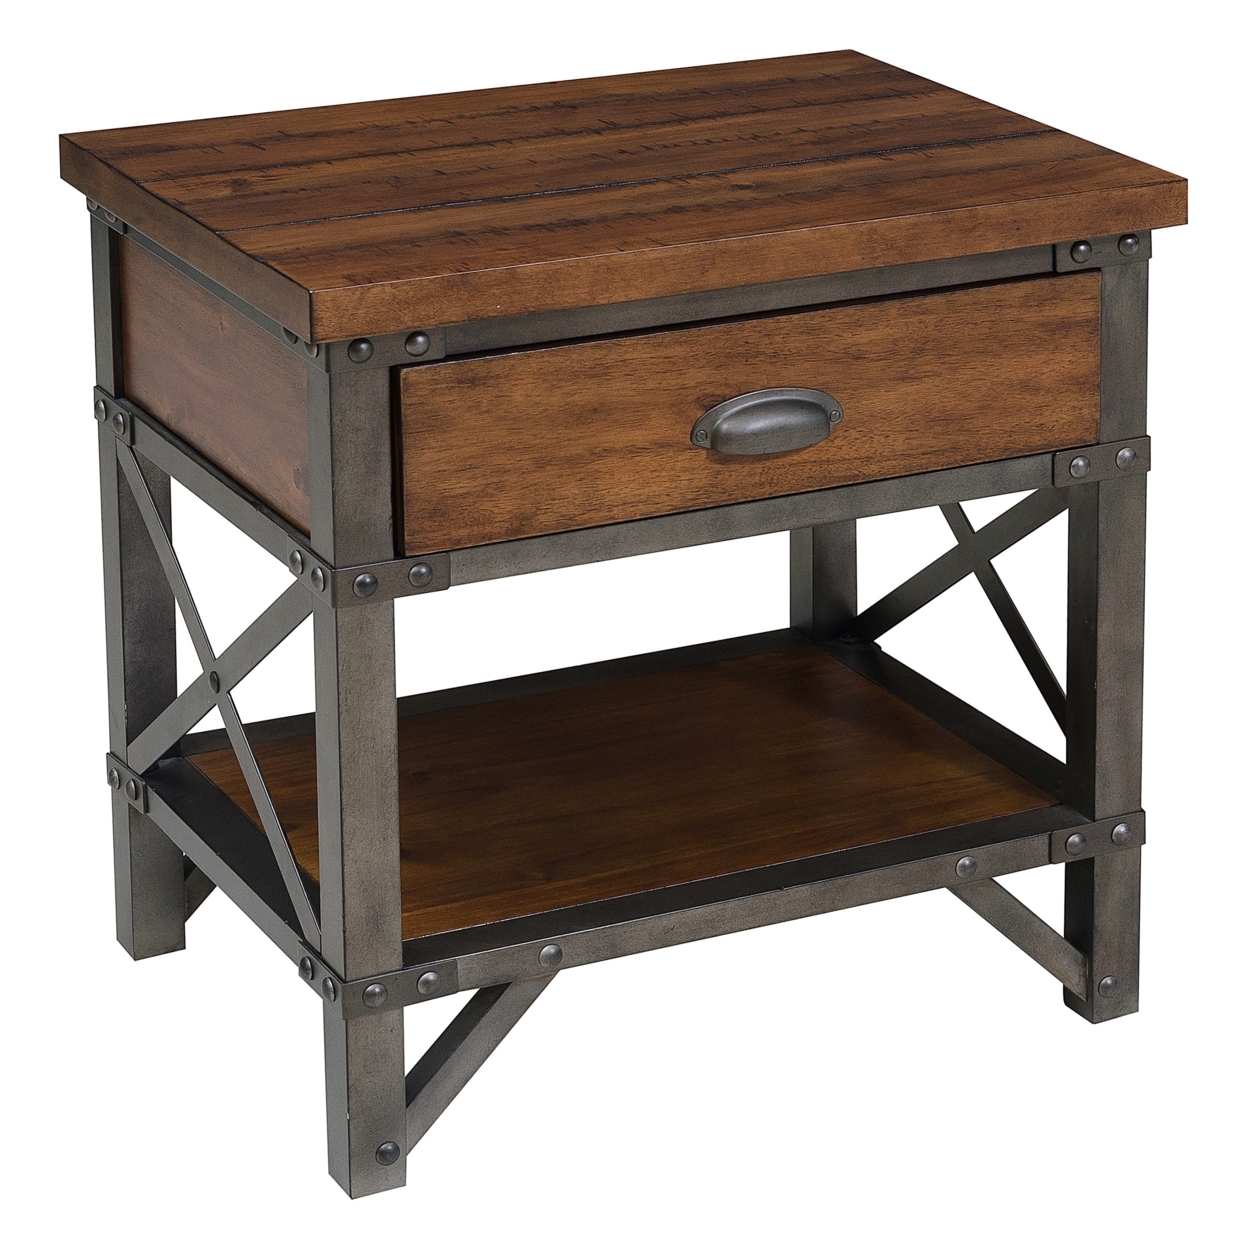 Wooden Nightstand With Metal Block Legs And Open Shelf, Brown- Saltoro Sherpi